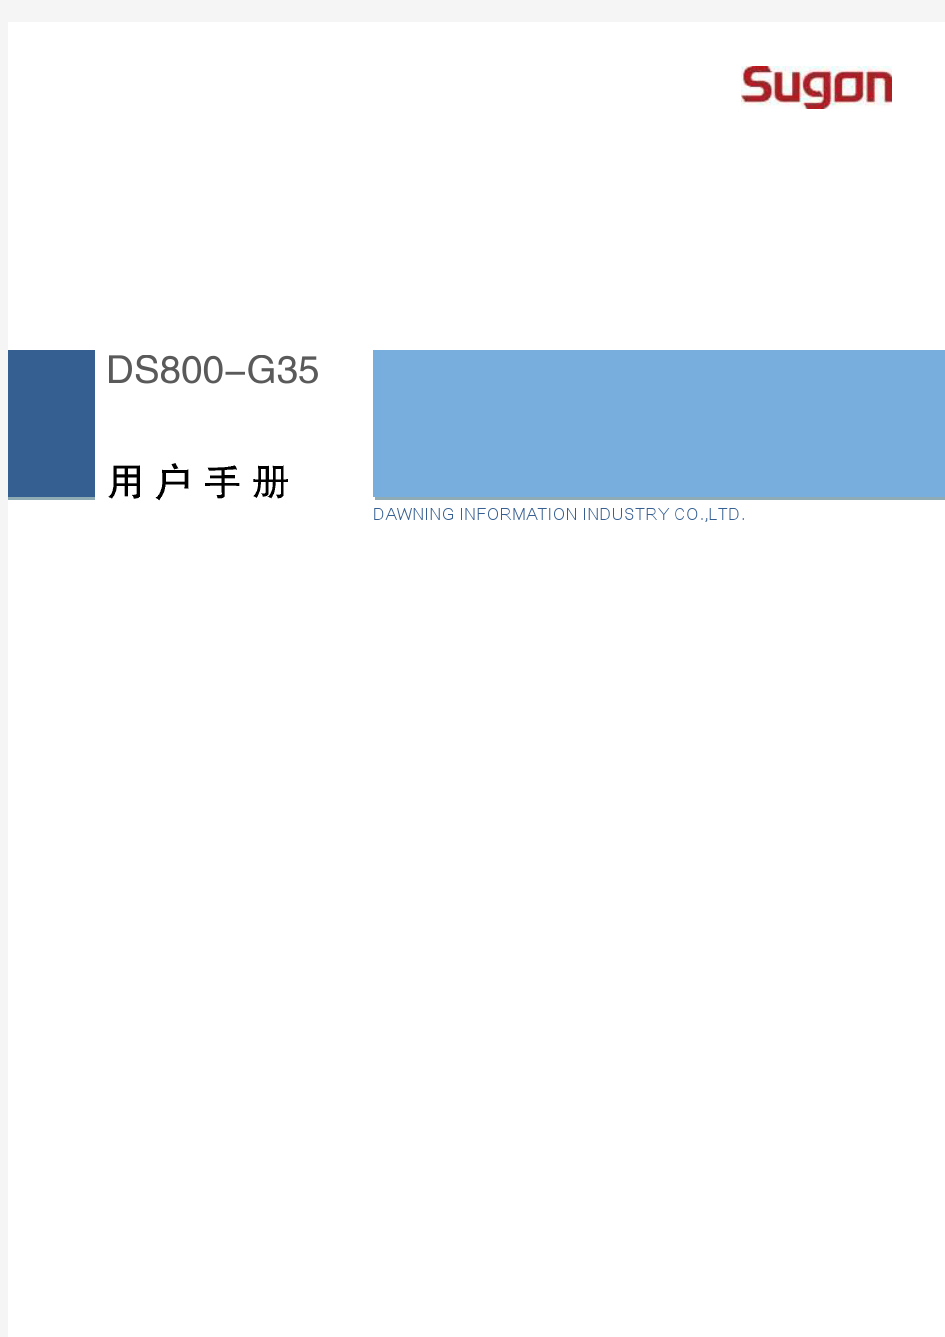 曙光DS800-G35系列磁盘阵列用户手册V1.0